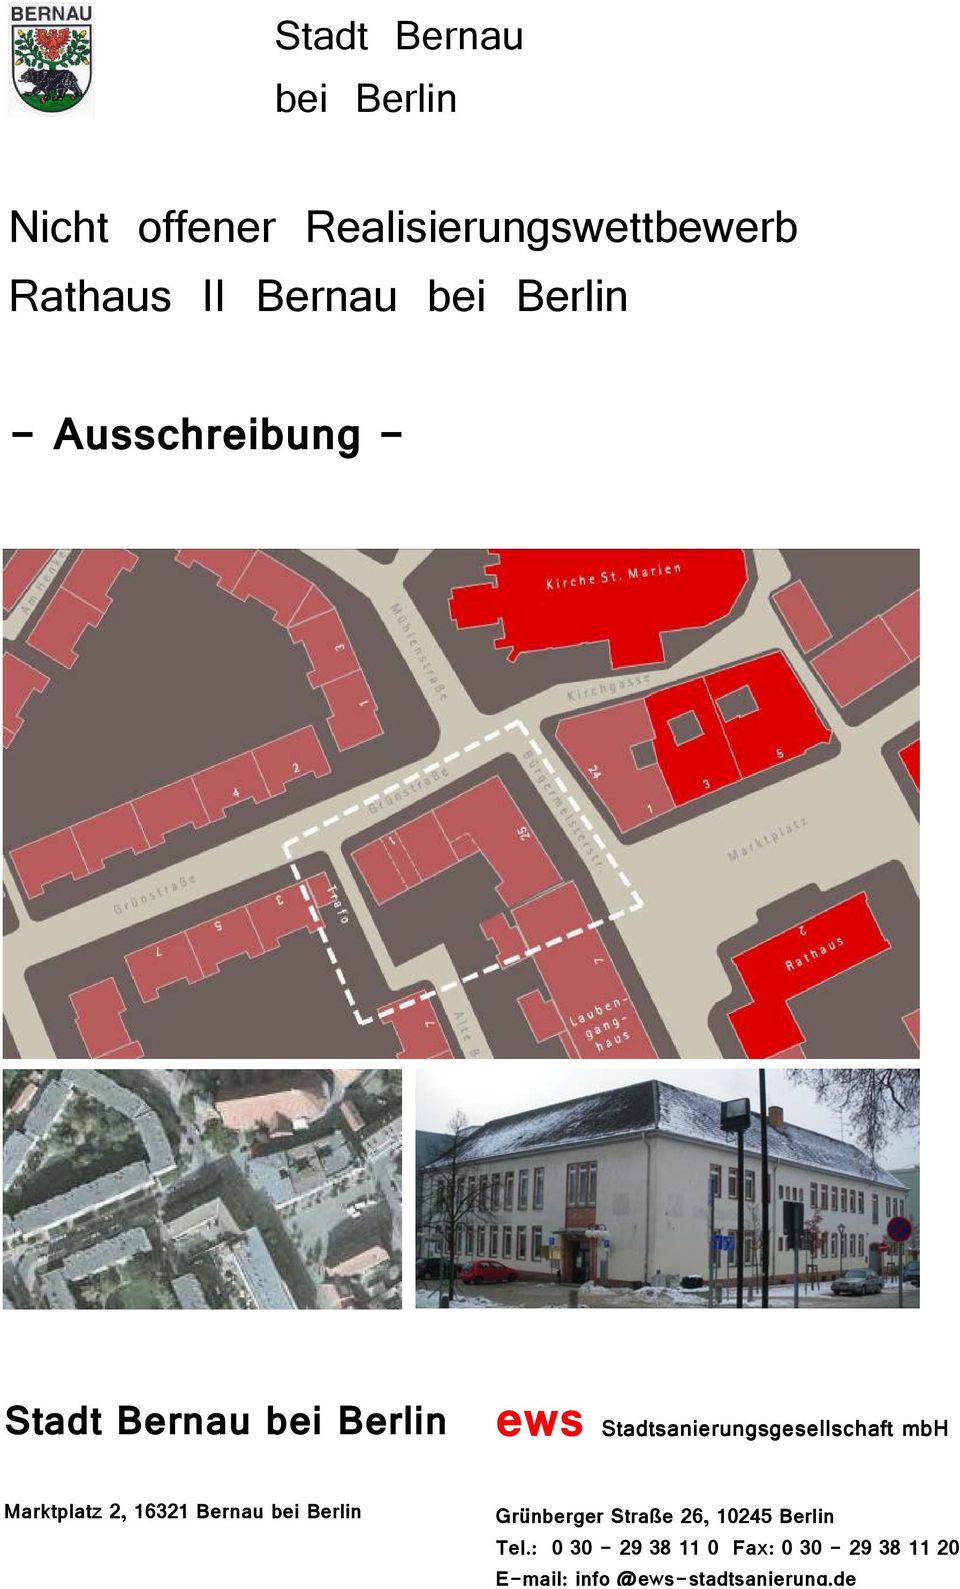 Stadtsanierungsgesellschaft mbh Marktplatz 2, 16321 Bernau bei Berlin Grünberger